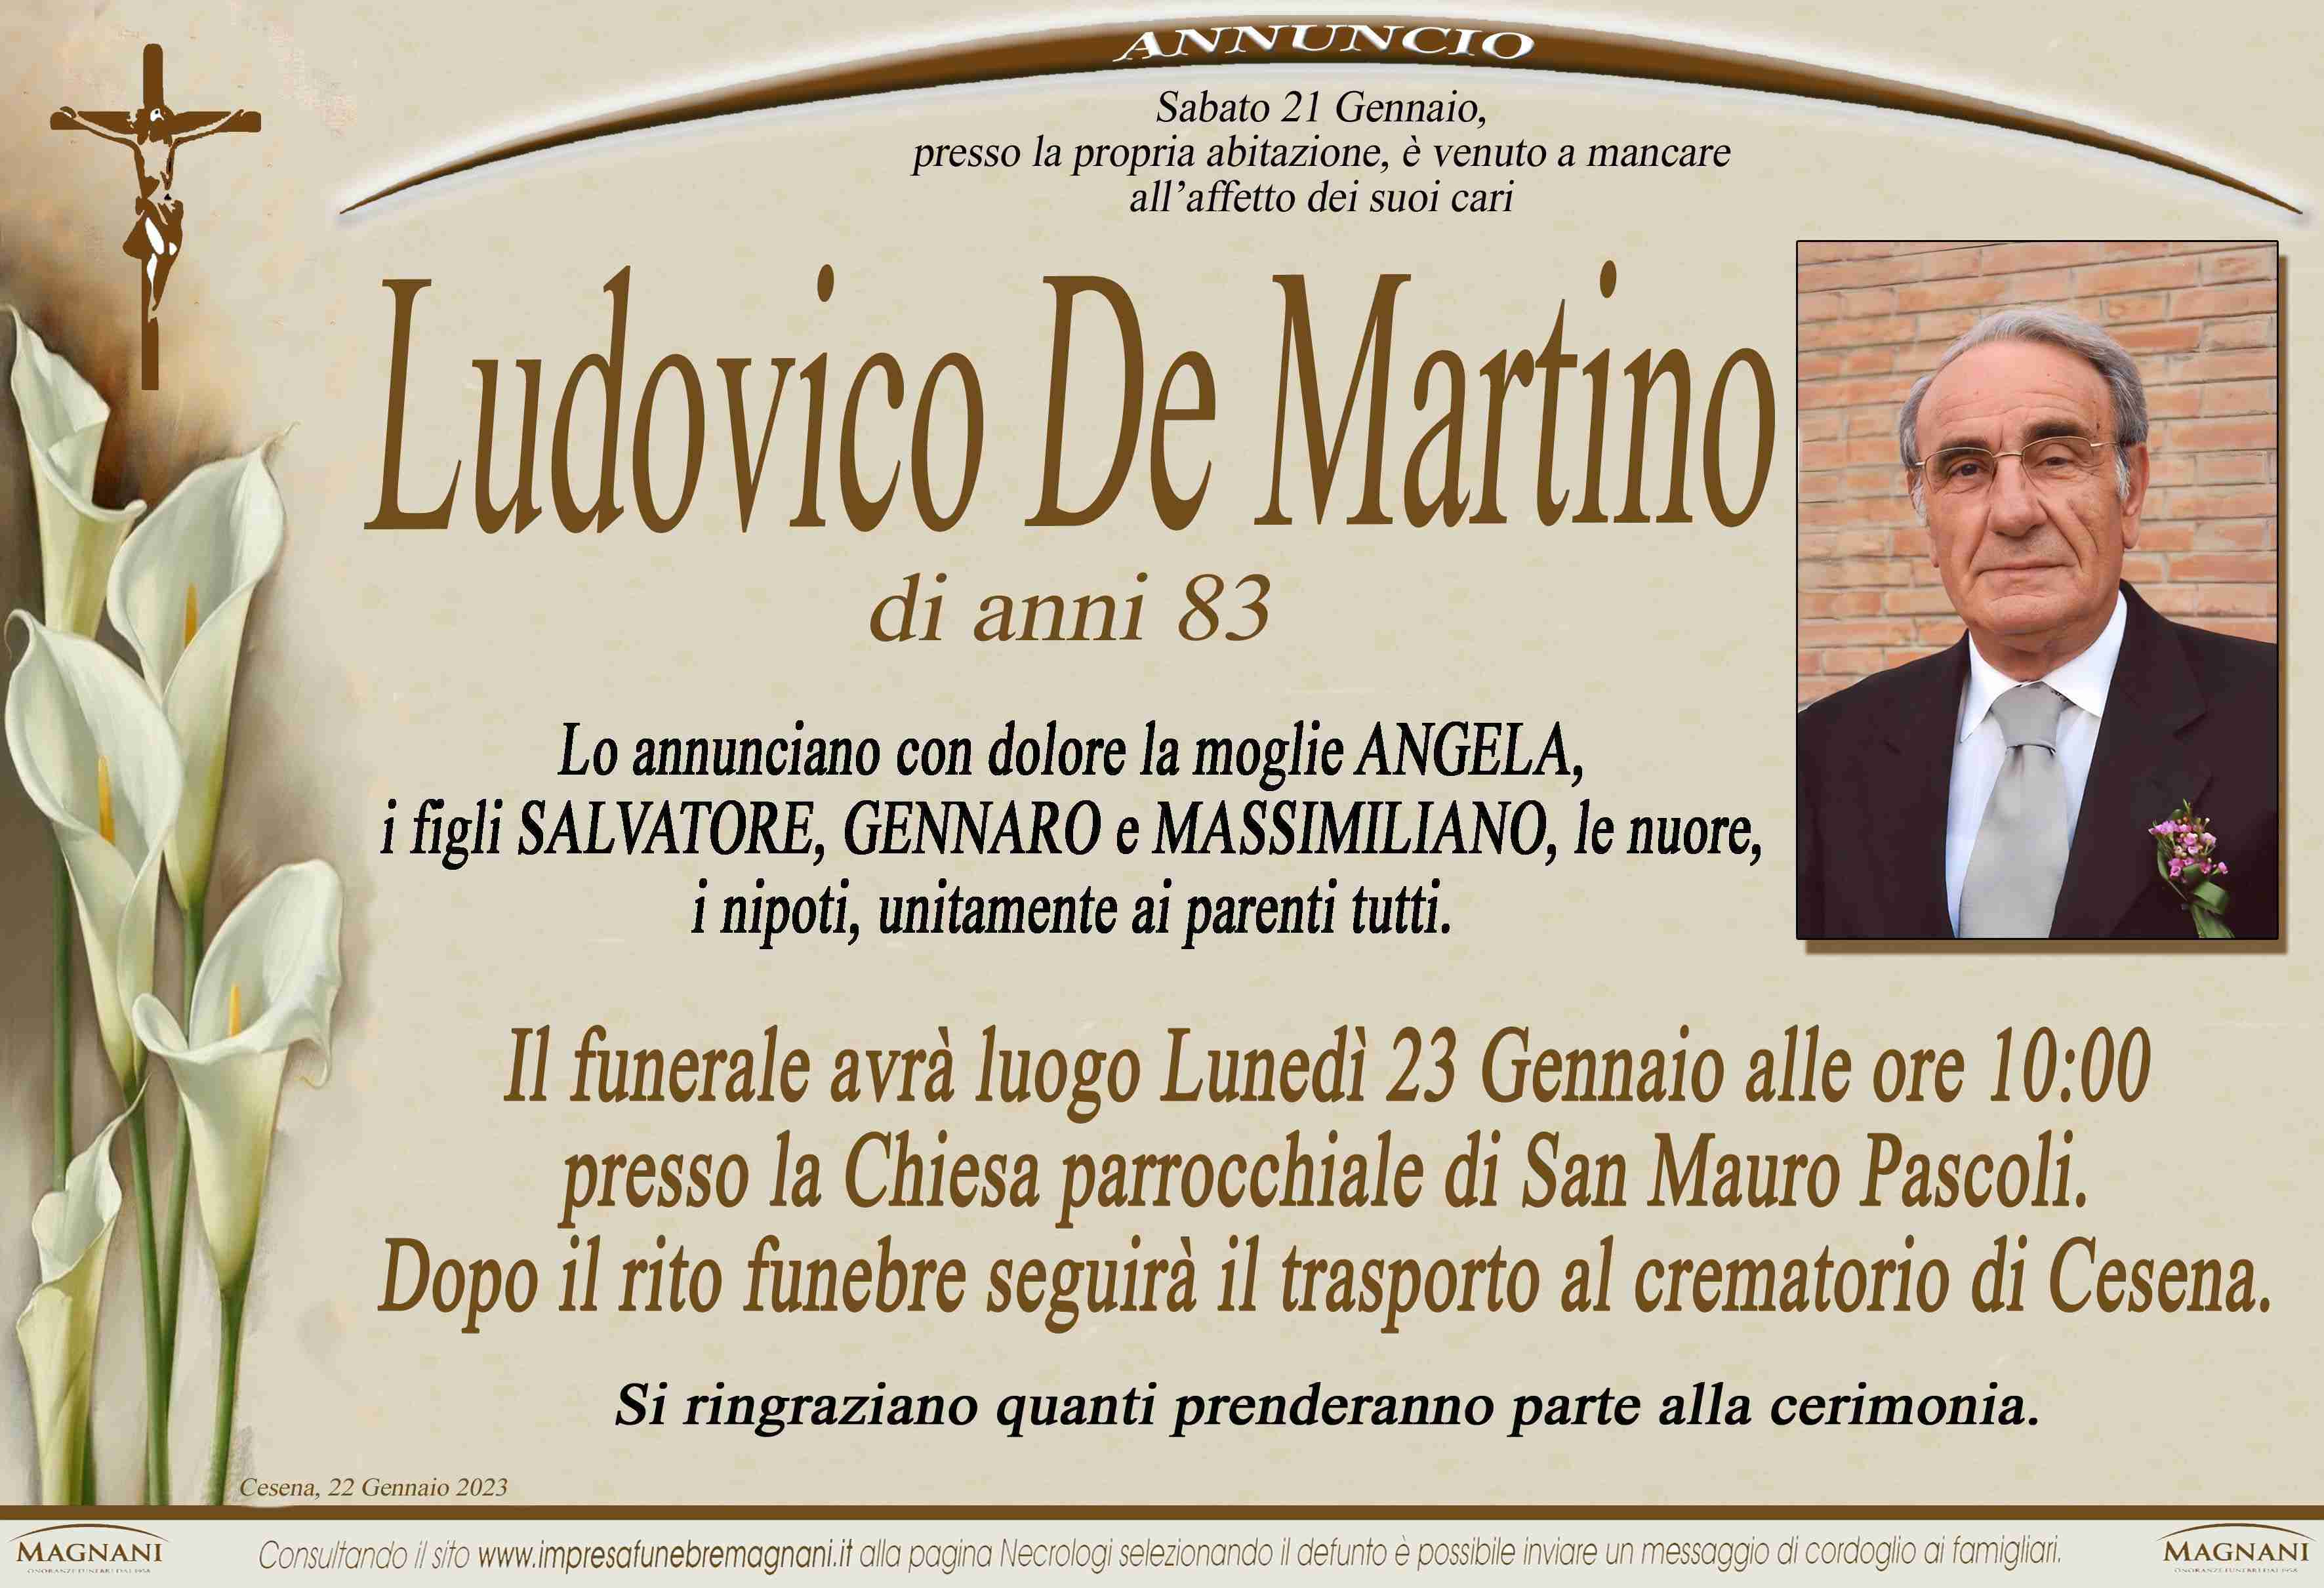 Ludovico De Martino